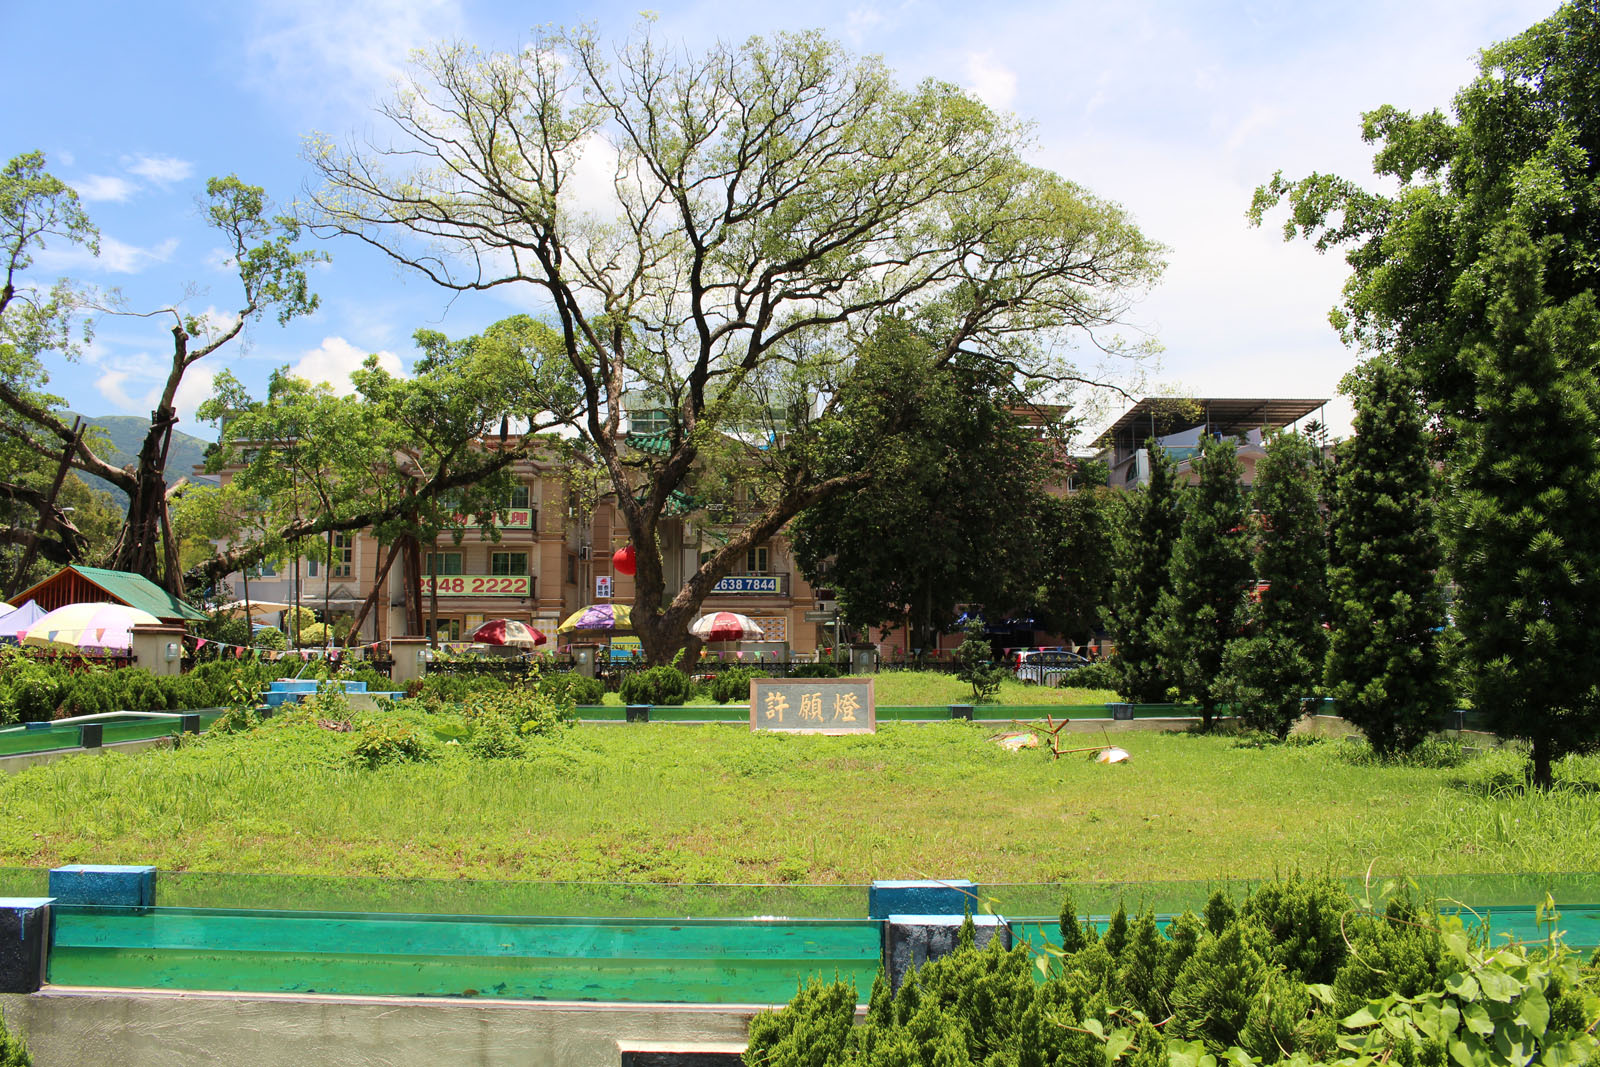 相片 7: 林村許願廣場(包括許願樹)及十二生肖廣場